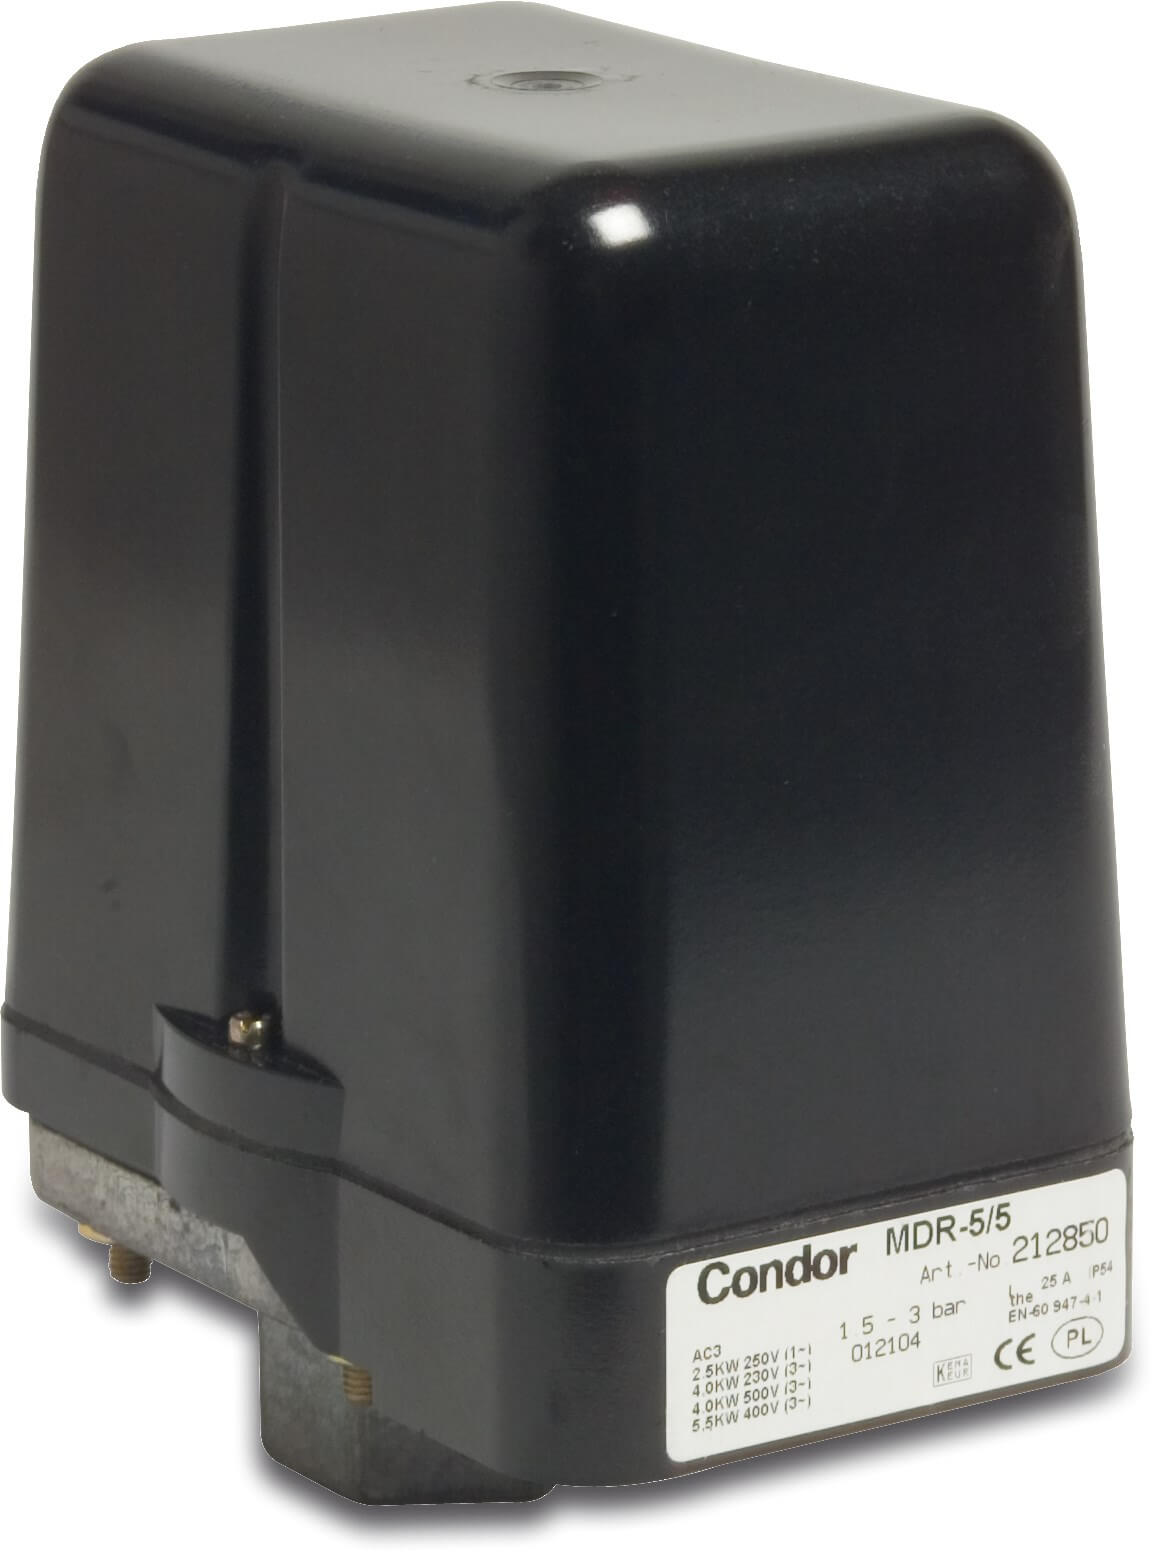 Condor Tryckbrytare 1/2" invändig gänga 25A 230/400VAC type MDR 5-5